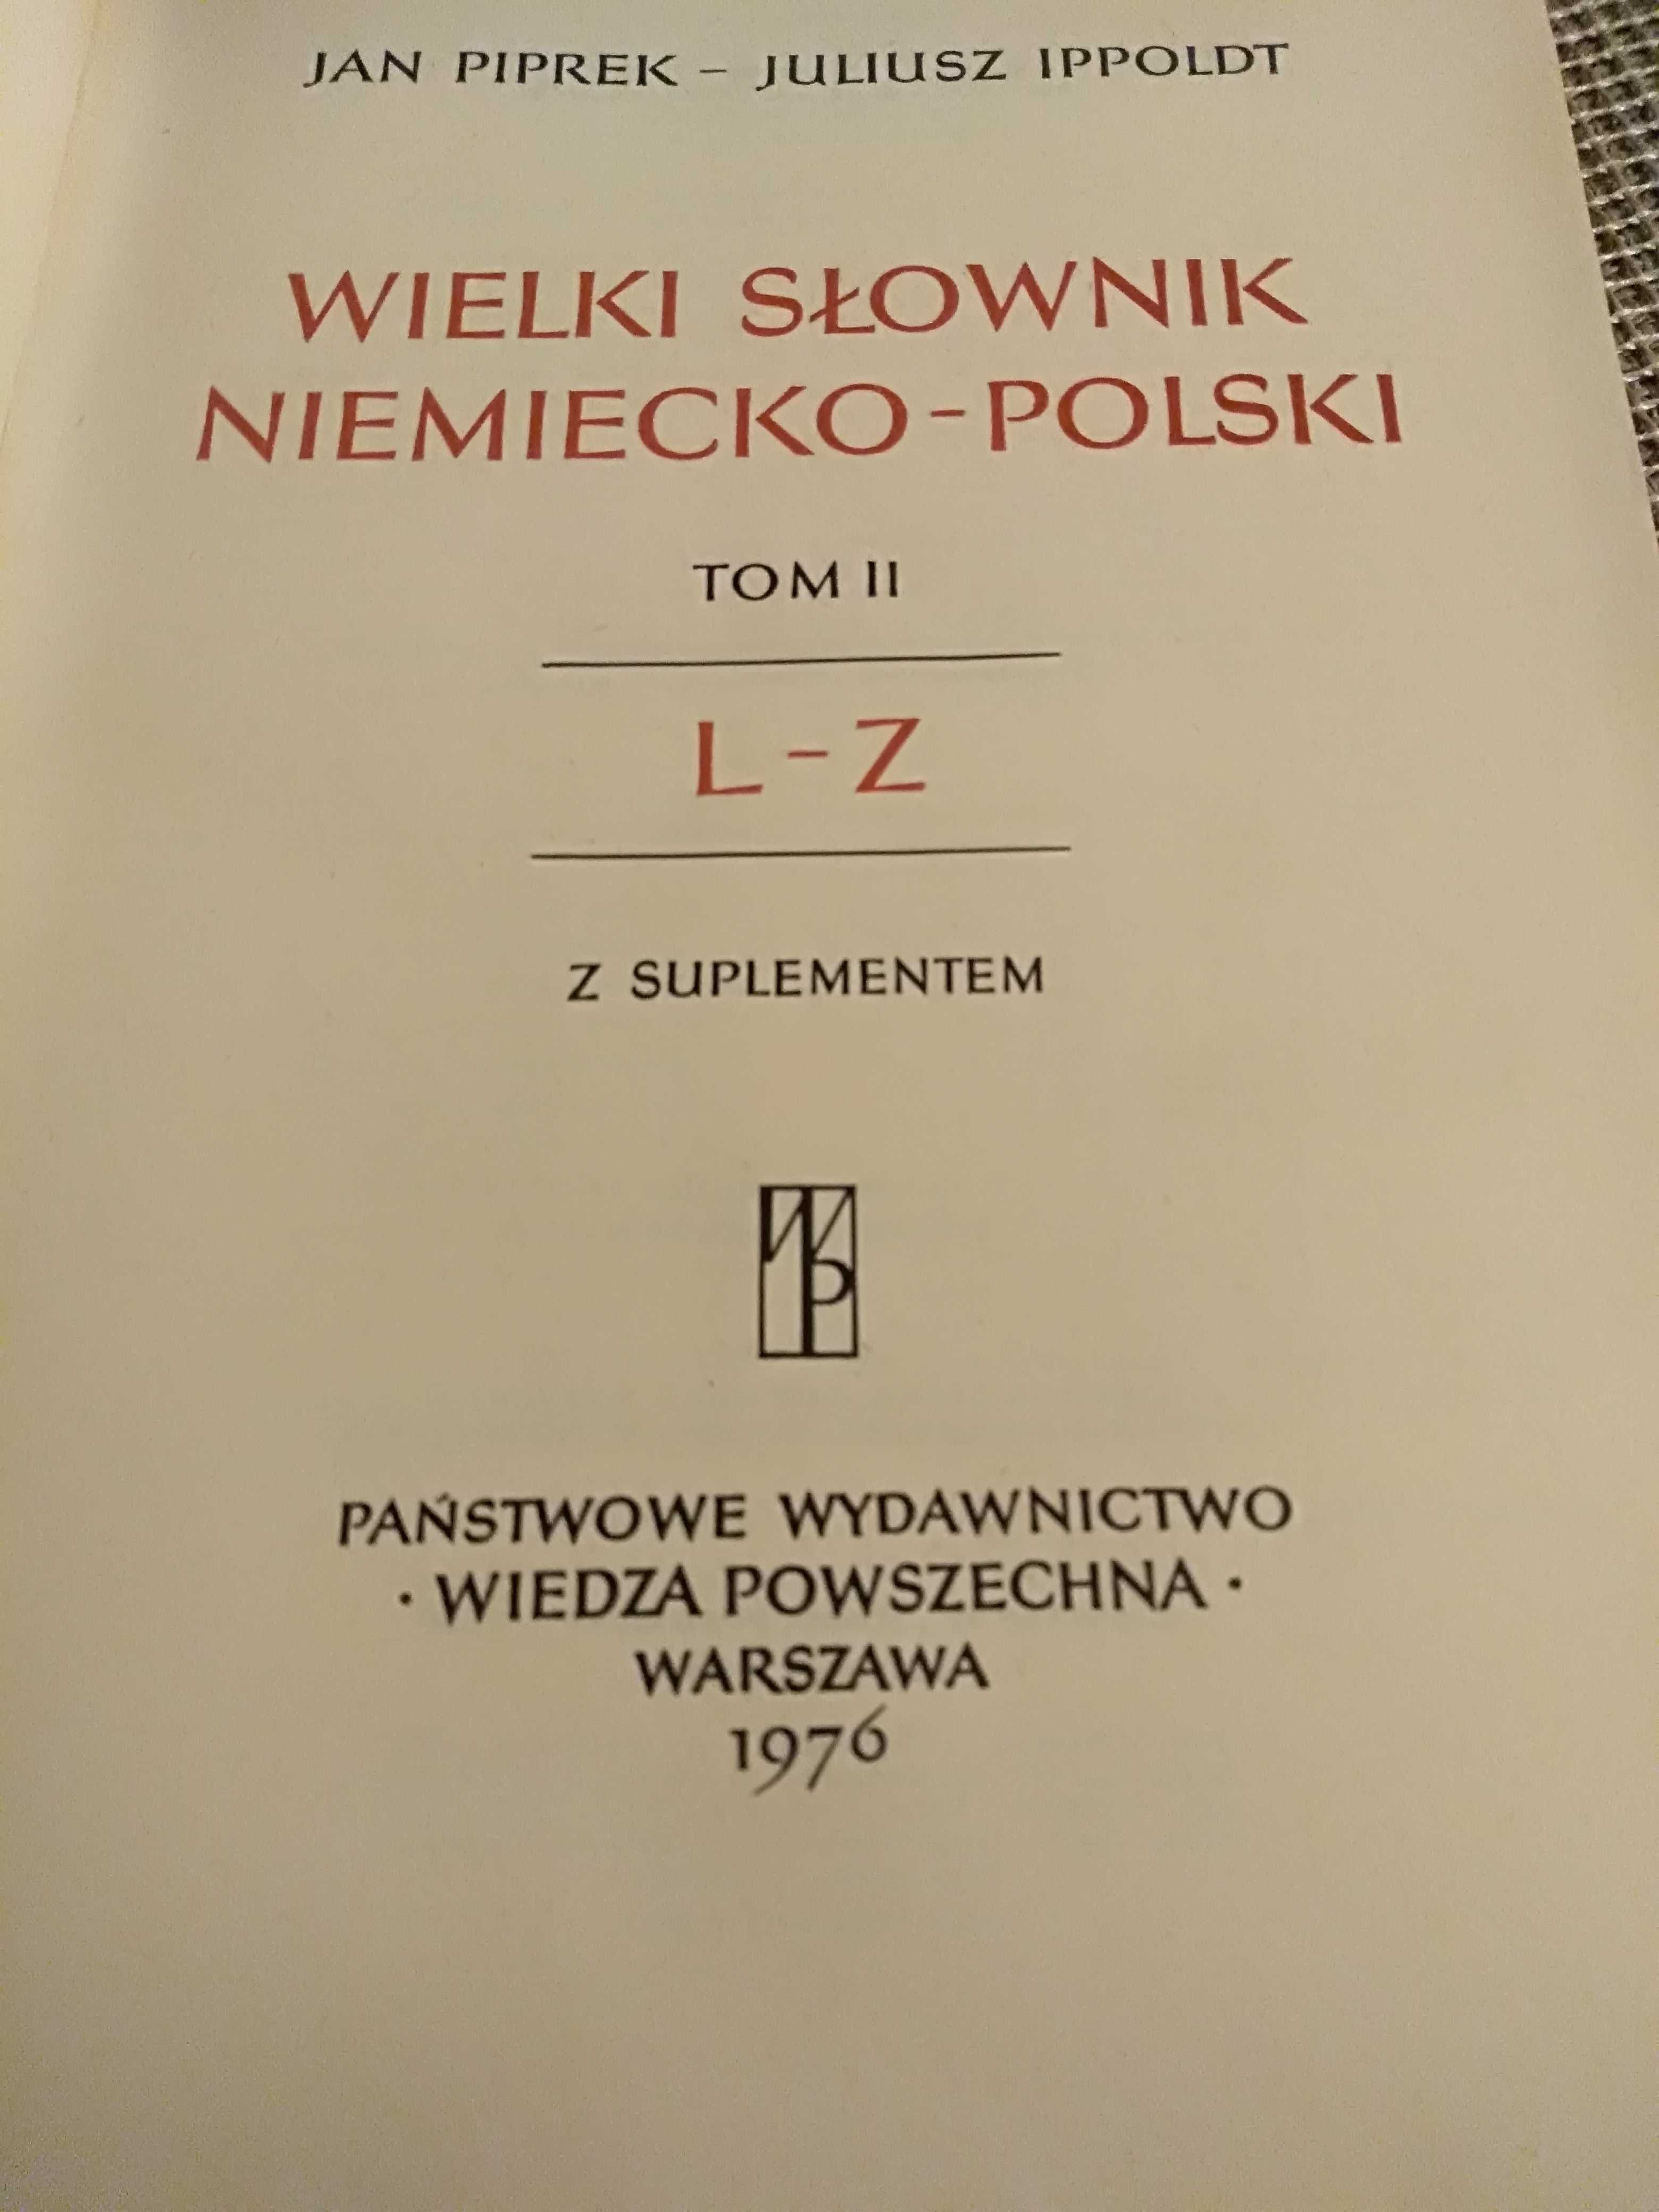 komplet słowników polsko-niemieckich, niemiecko-polskich